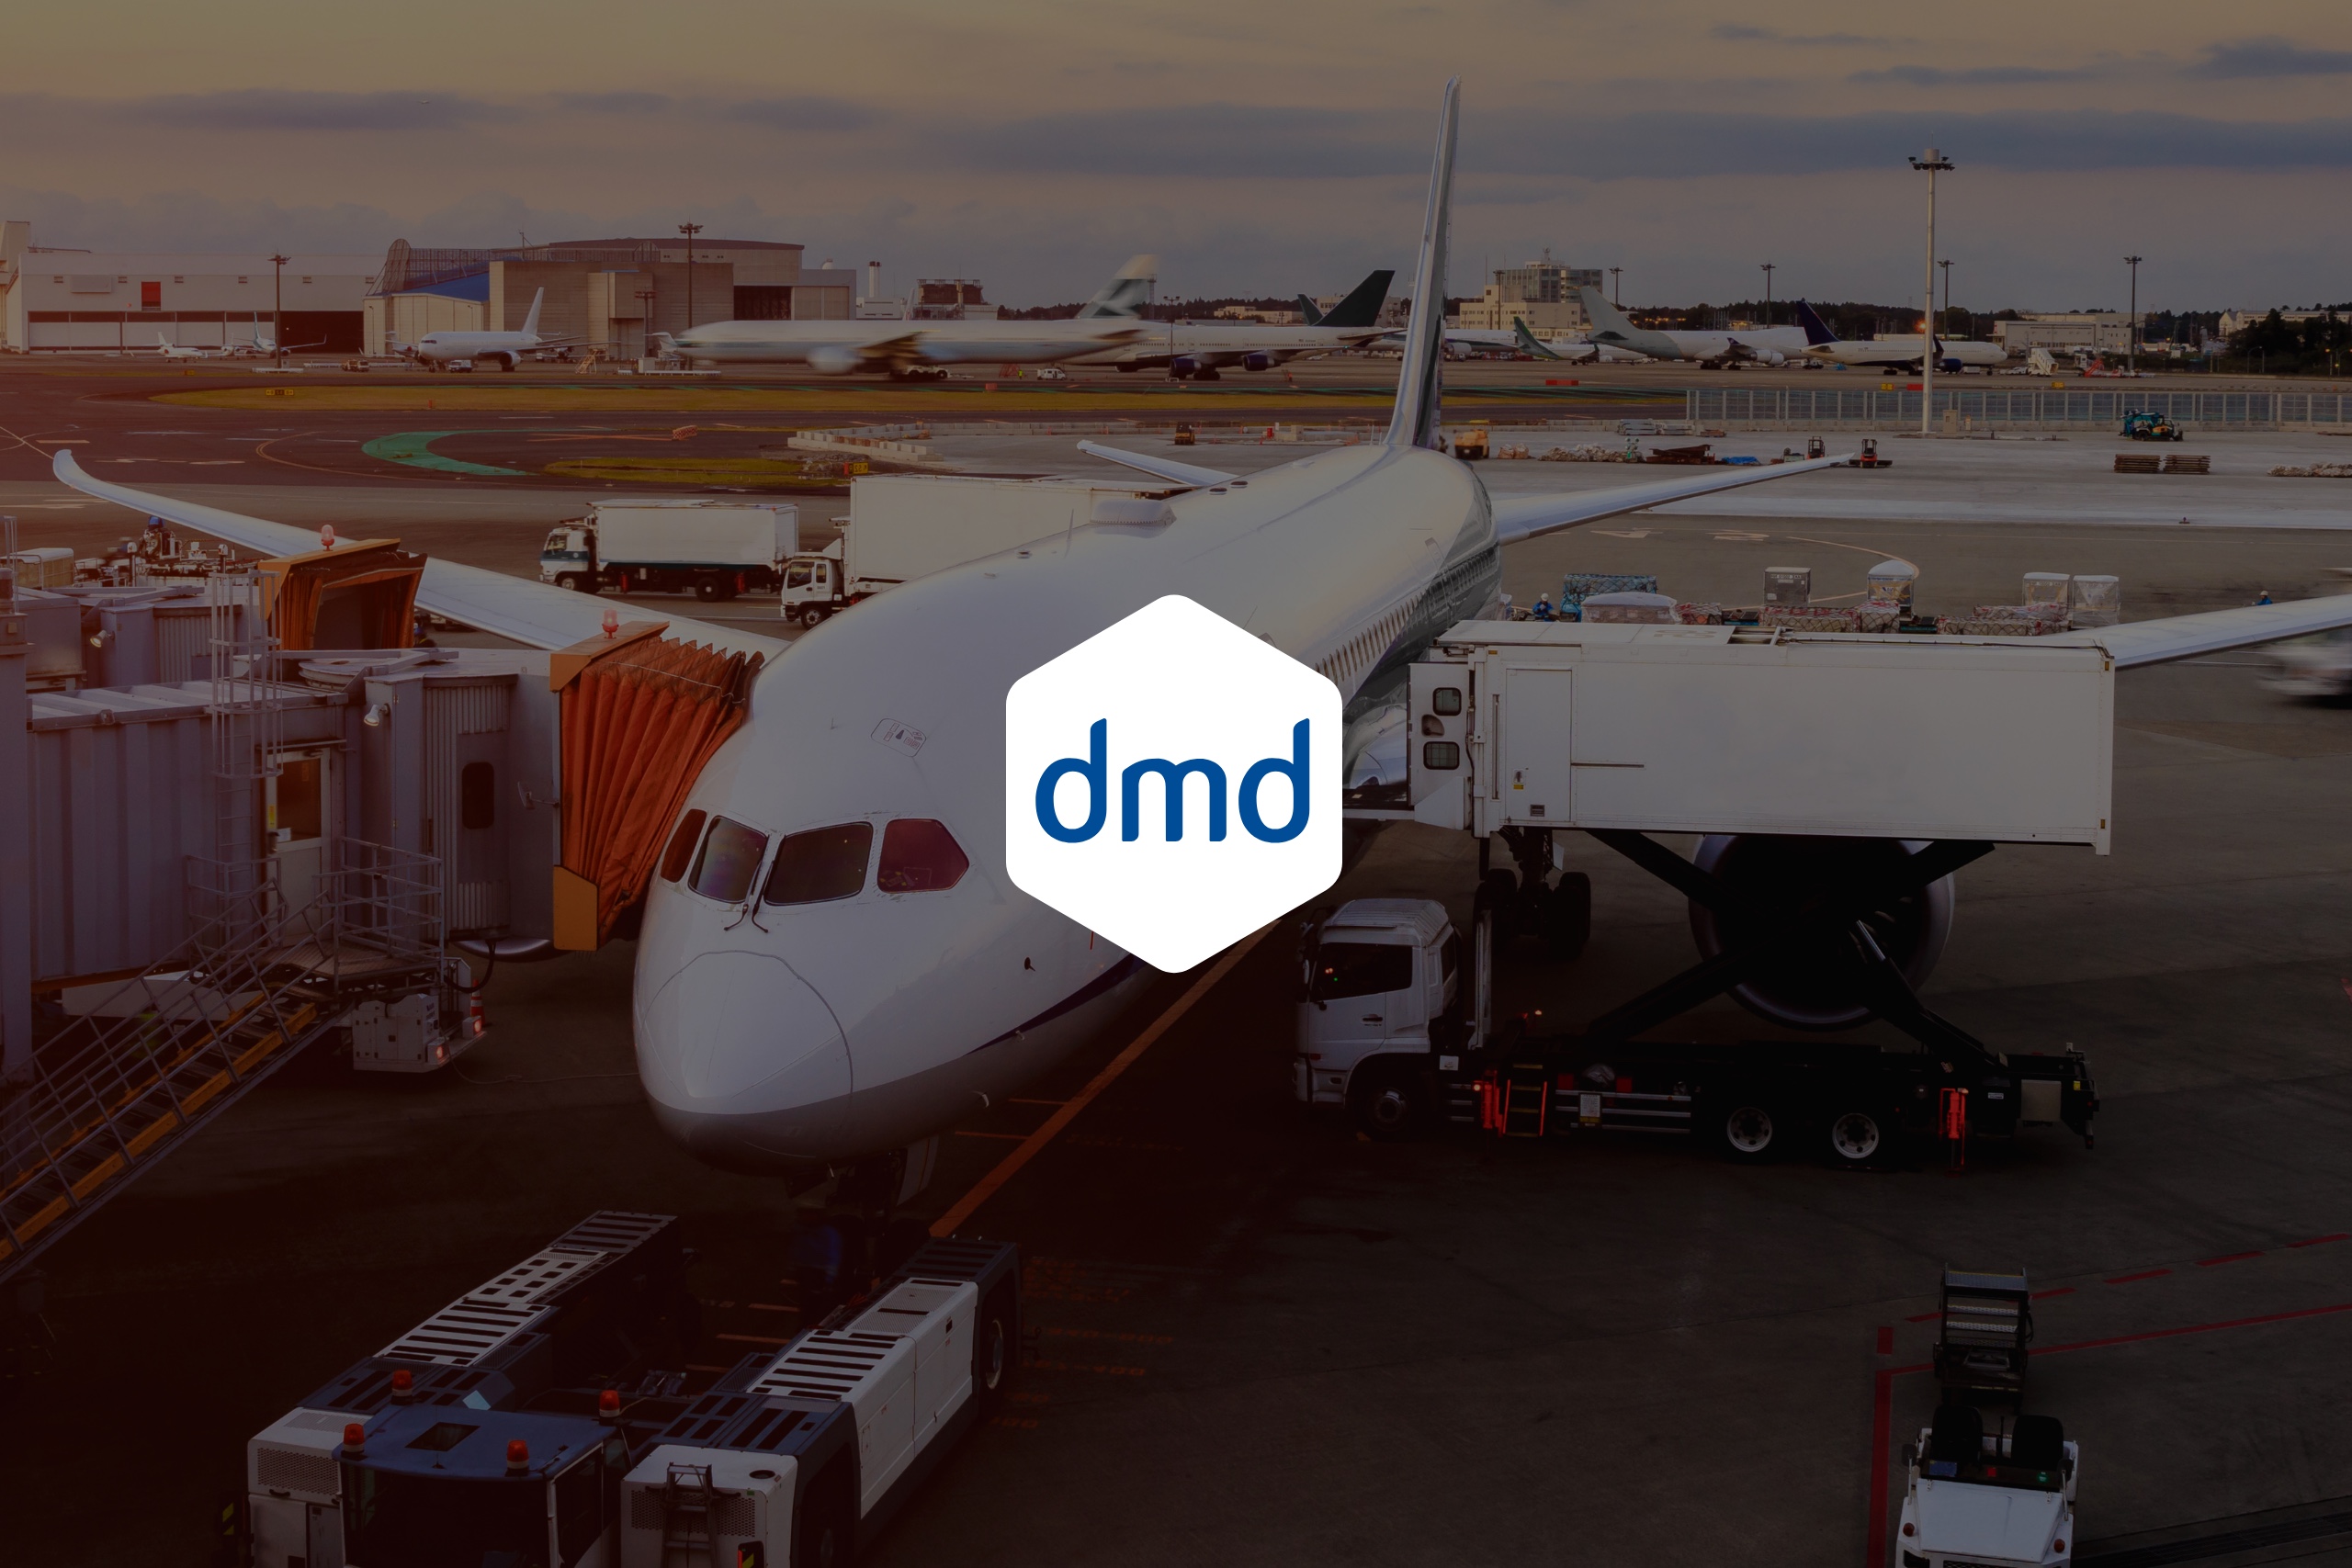 DMD corporate identity